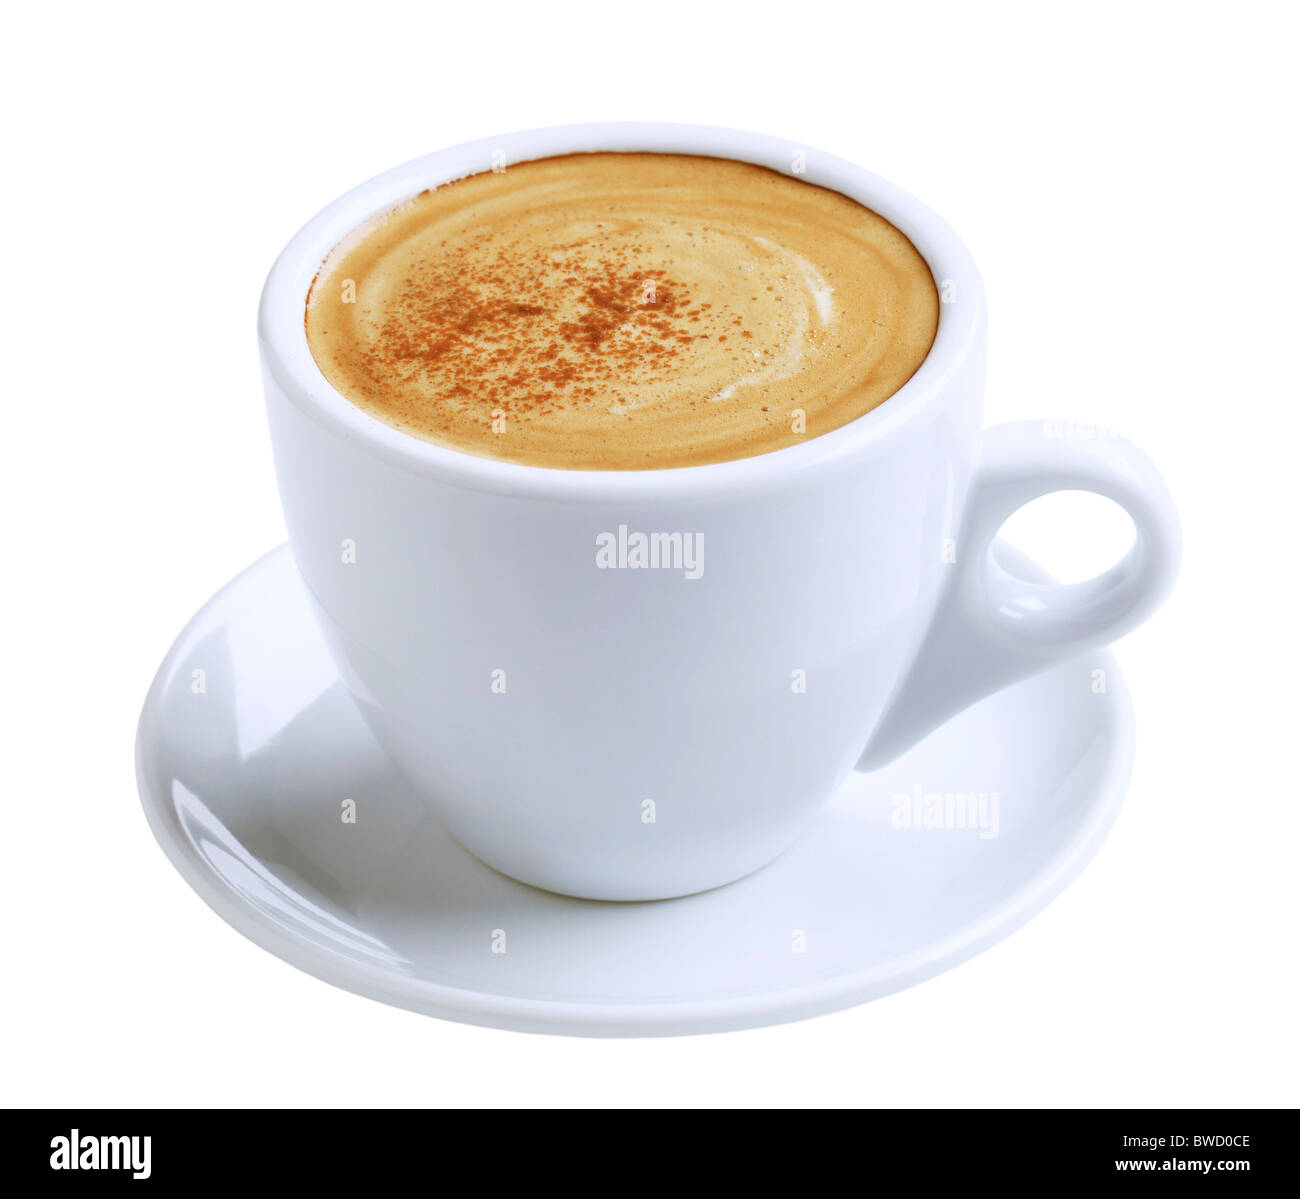 Taza de café con crema y canela Foto de stock